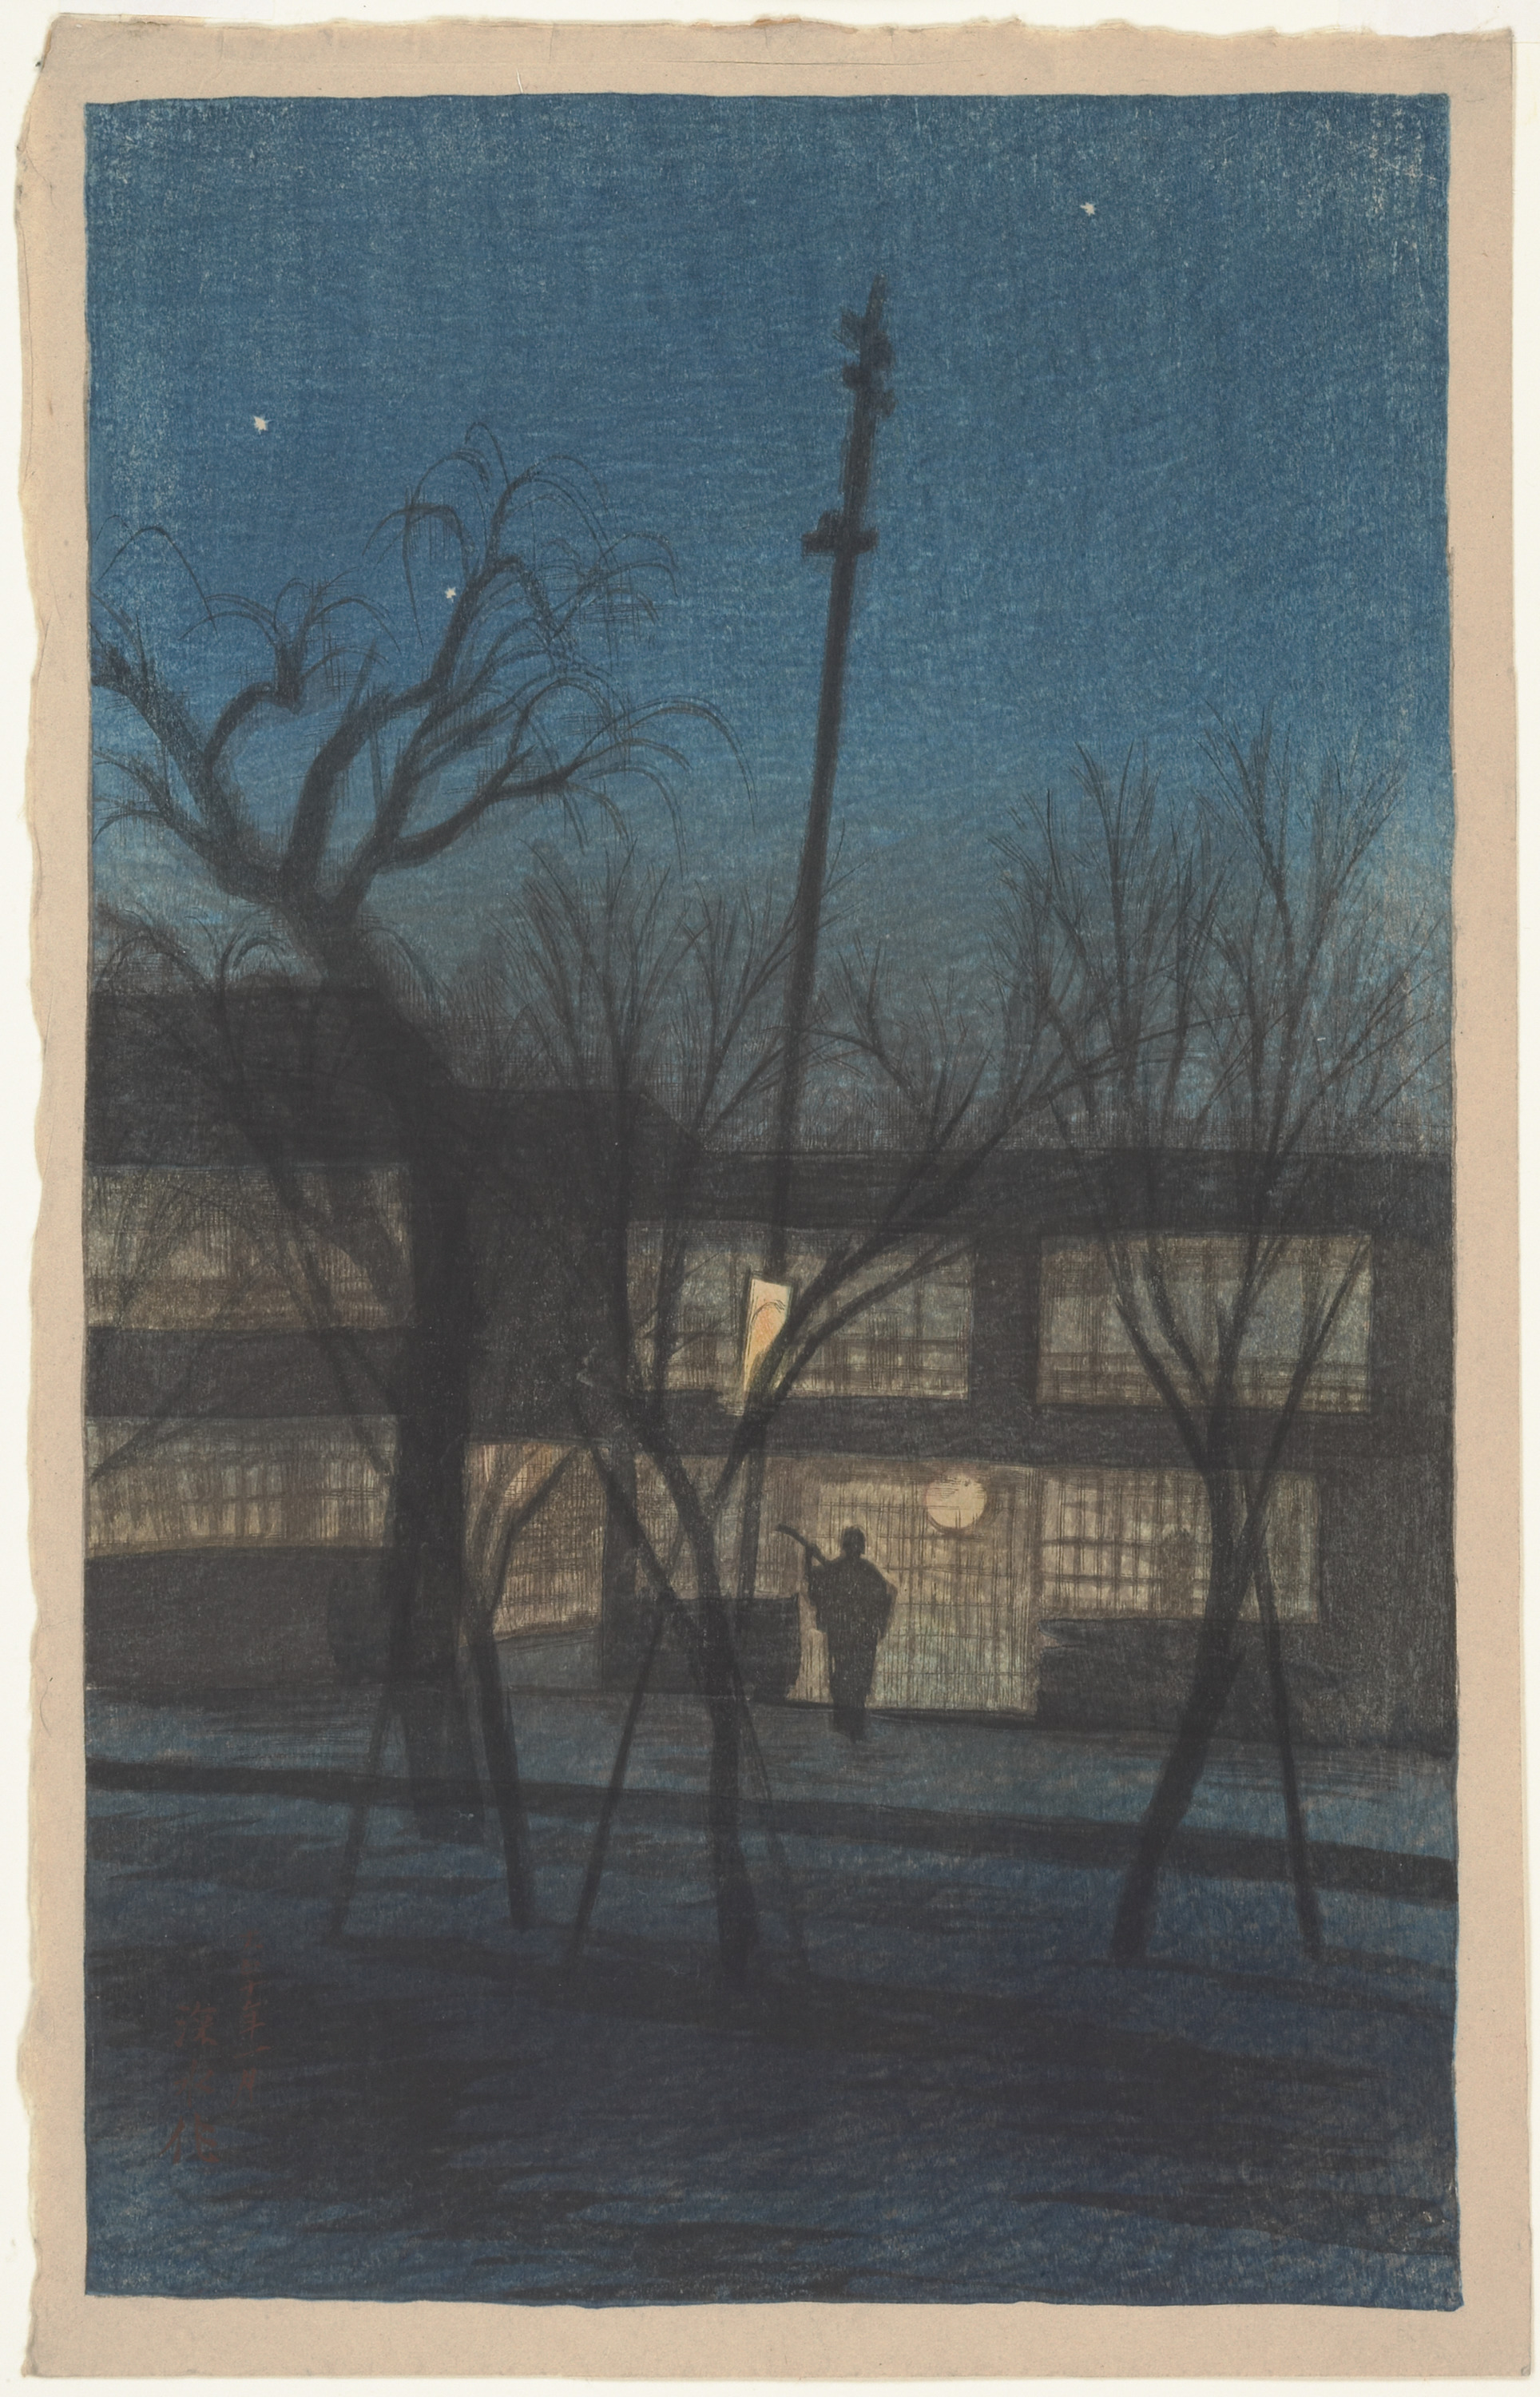 Minstrel at Ikenohata, 1921 woodblock print on paper